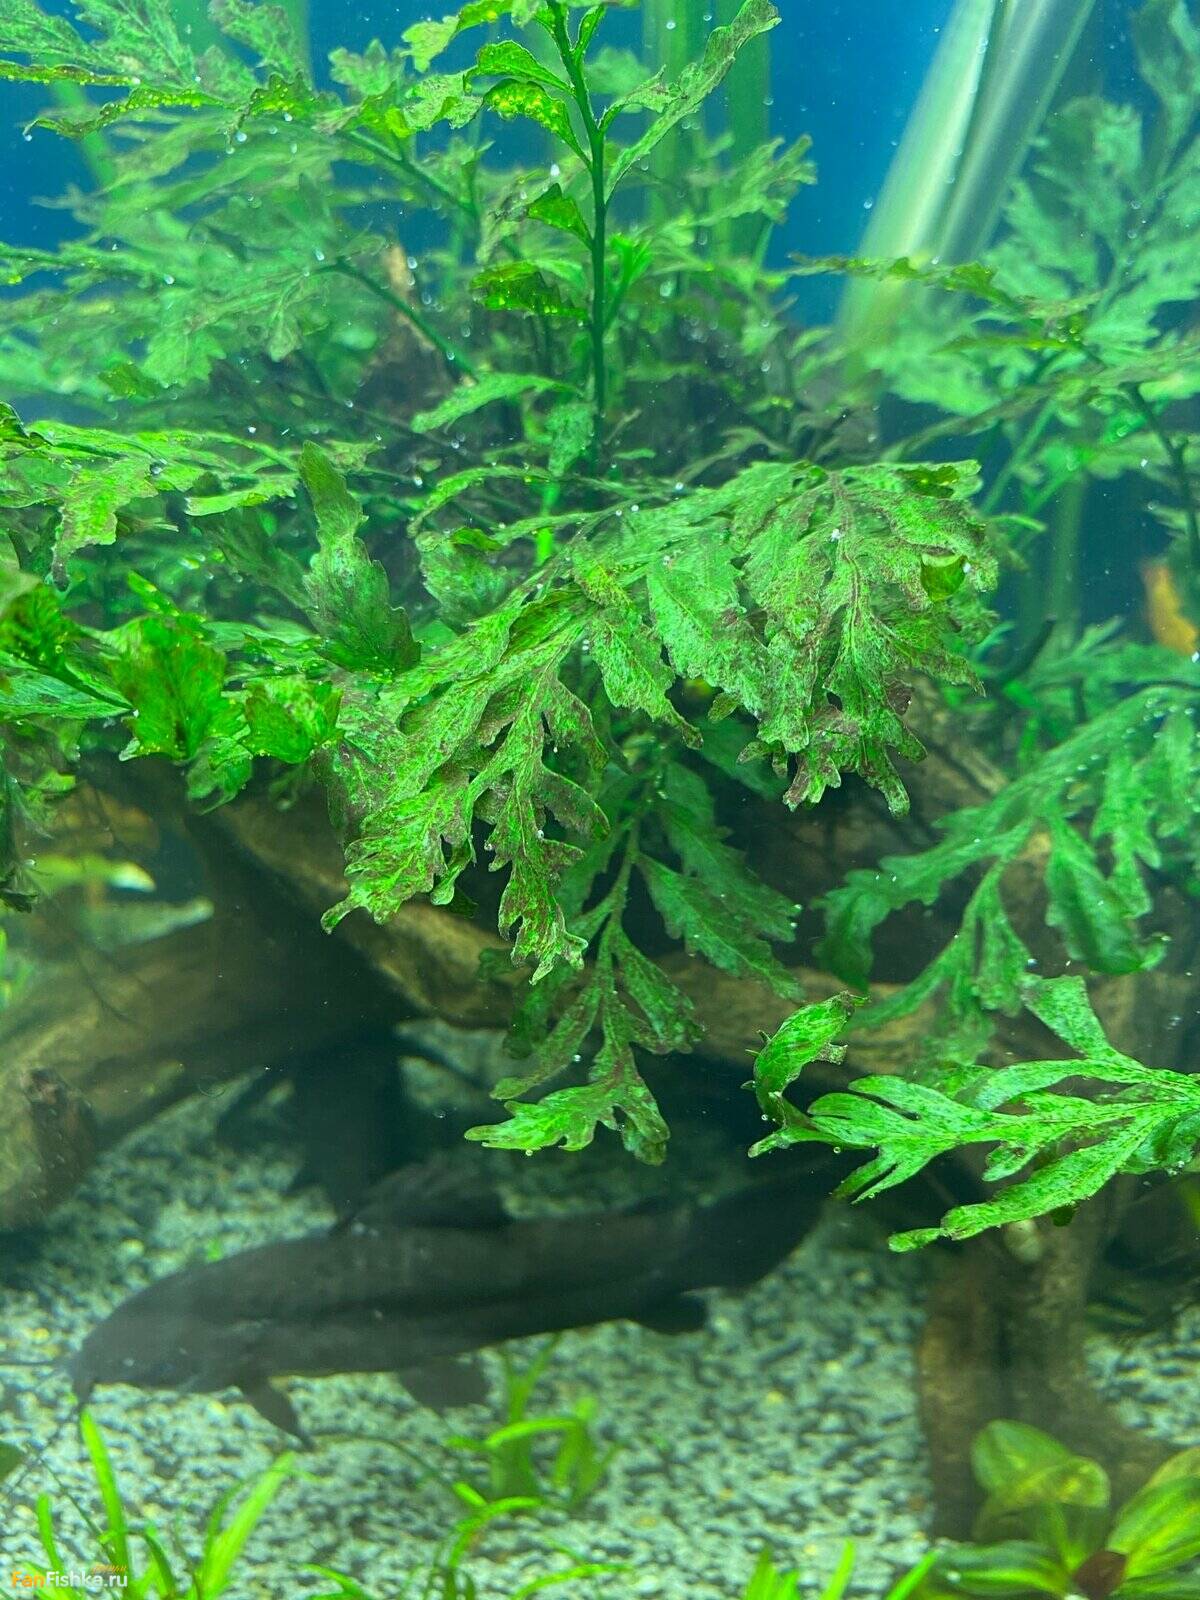 Дно аквариума покрывается зеленым налетом